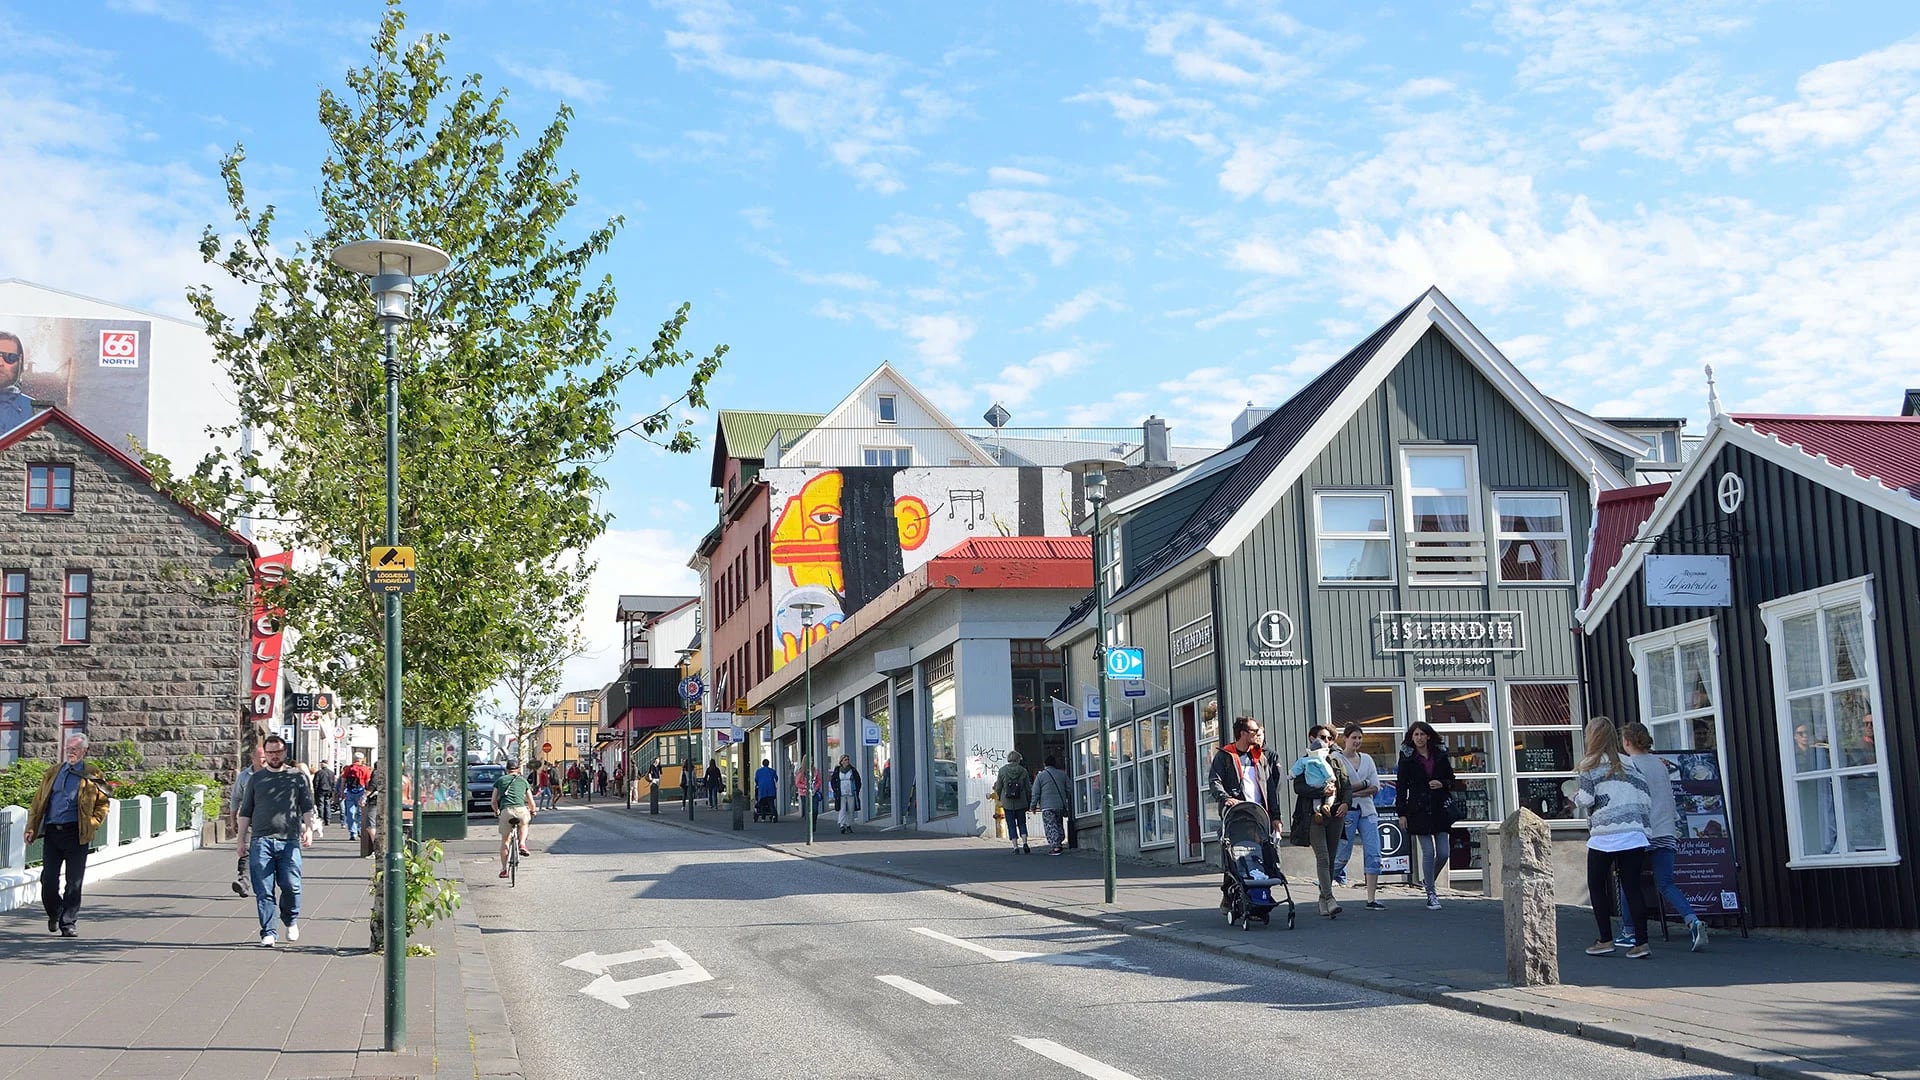 El centro de Reikjavik, la capital europea más pequeña (Shutterstock)